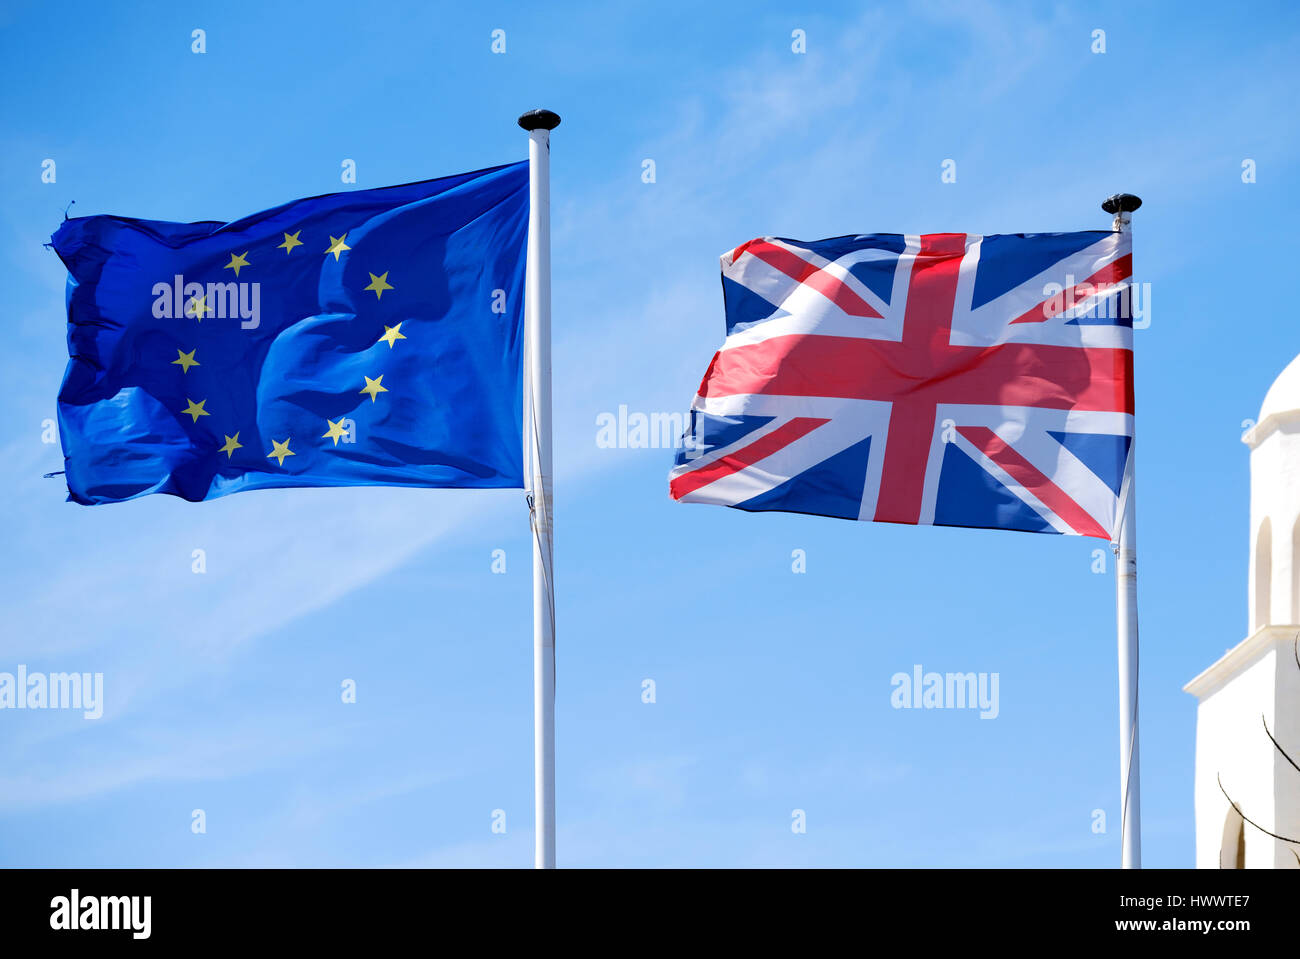 Una bandera Union Jack junto una bandera europea o la bandera de Europa. Ambos soplando ferozmente en una brisa fuerte contra un fondo de cielo azul Foto de stock